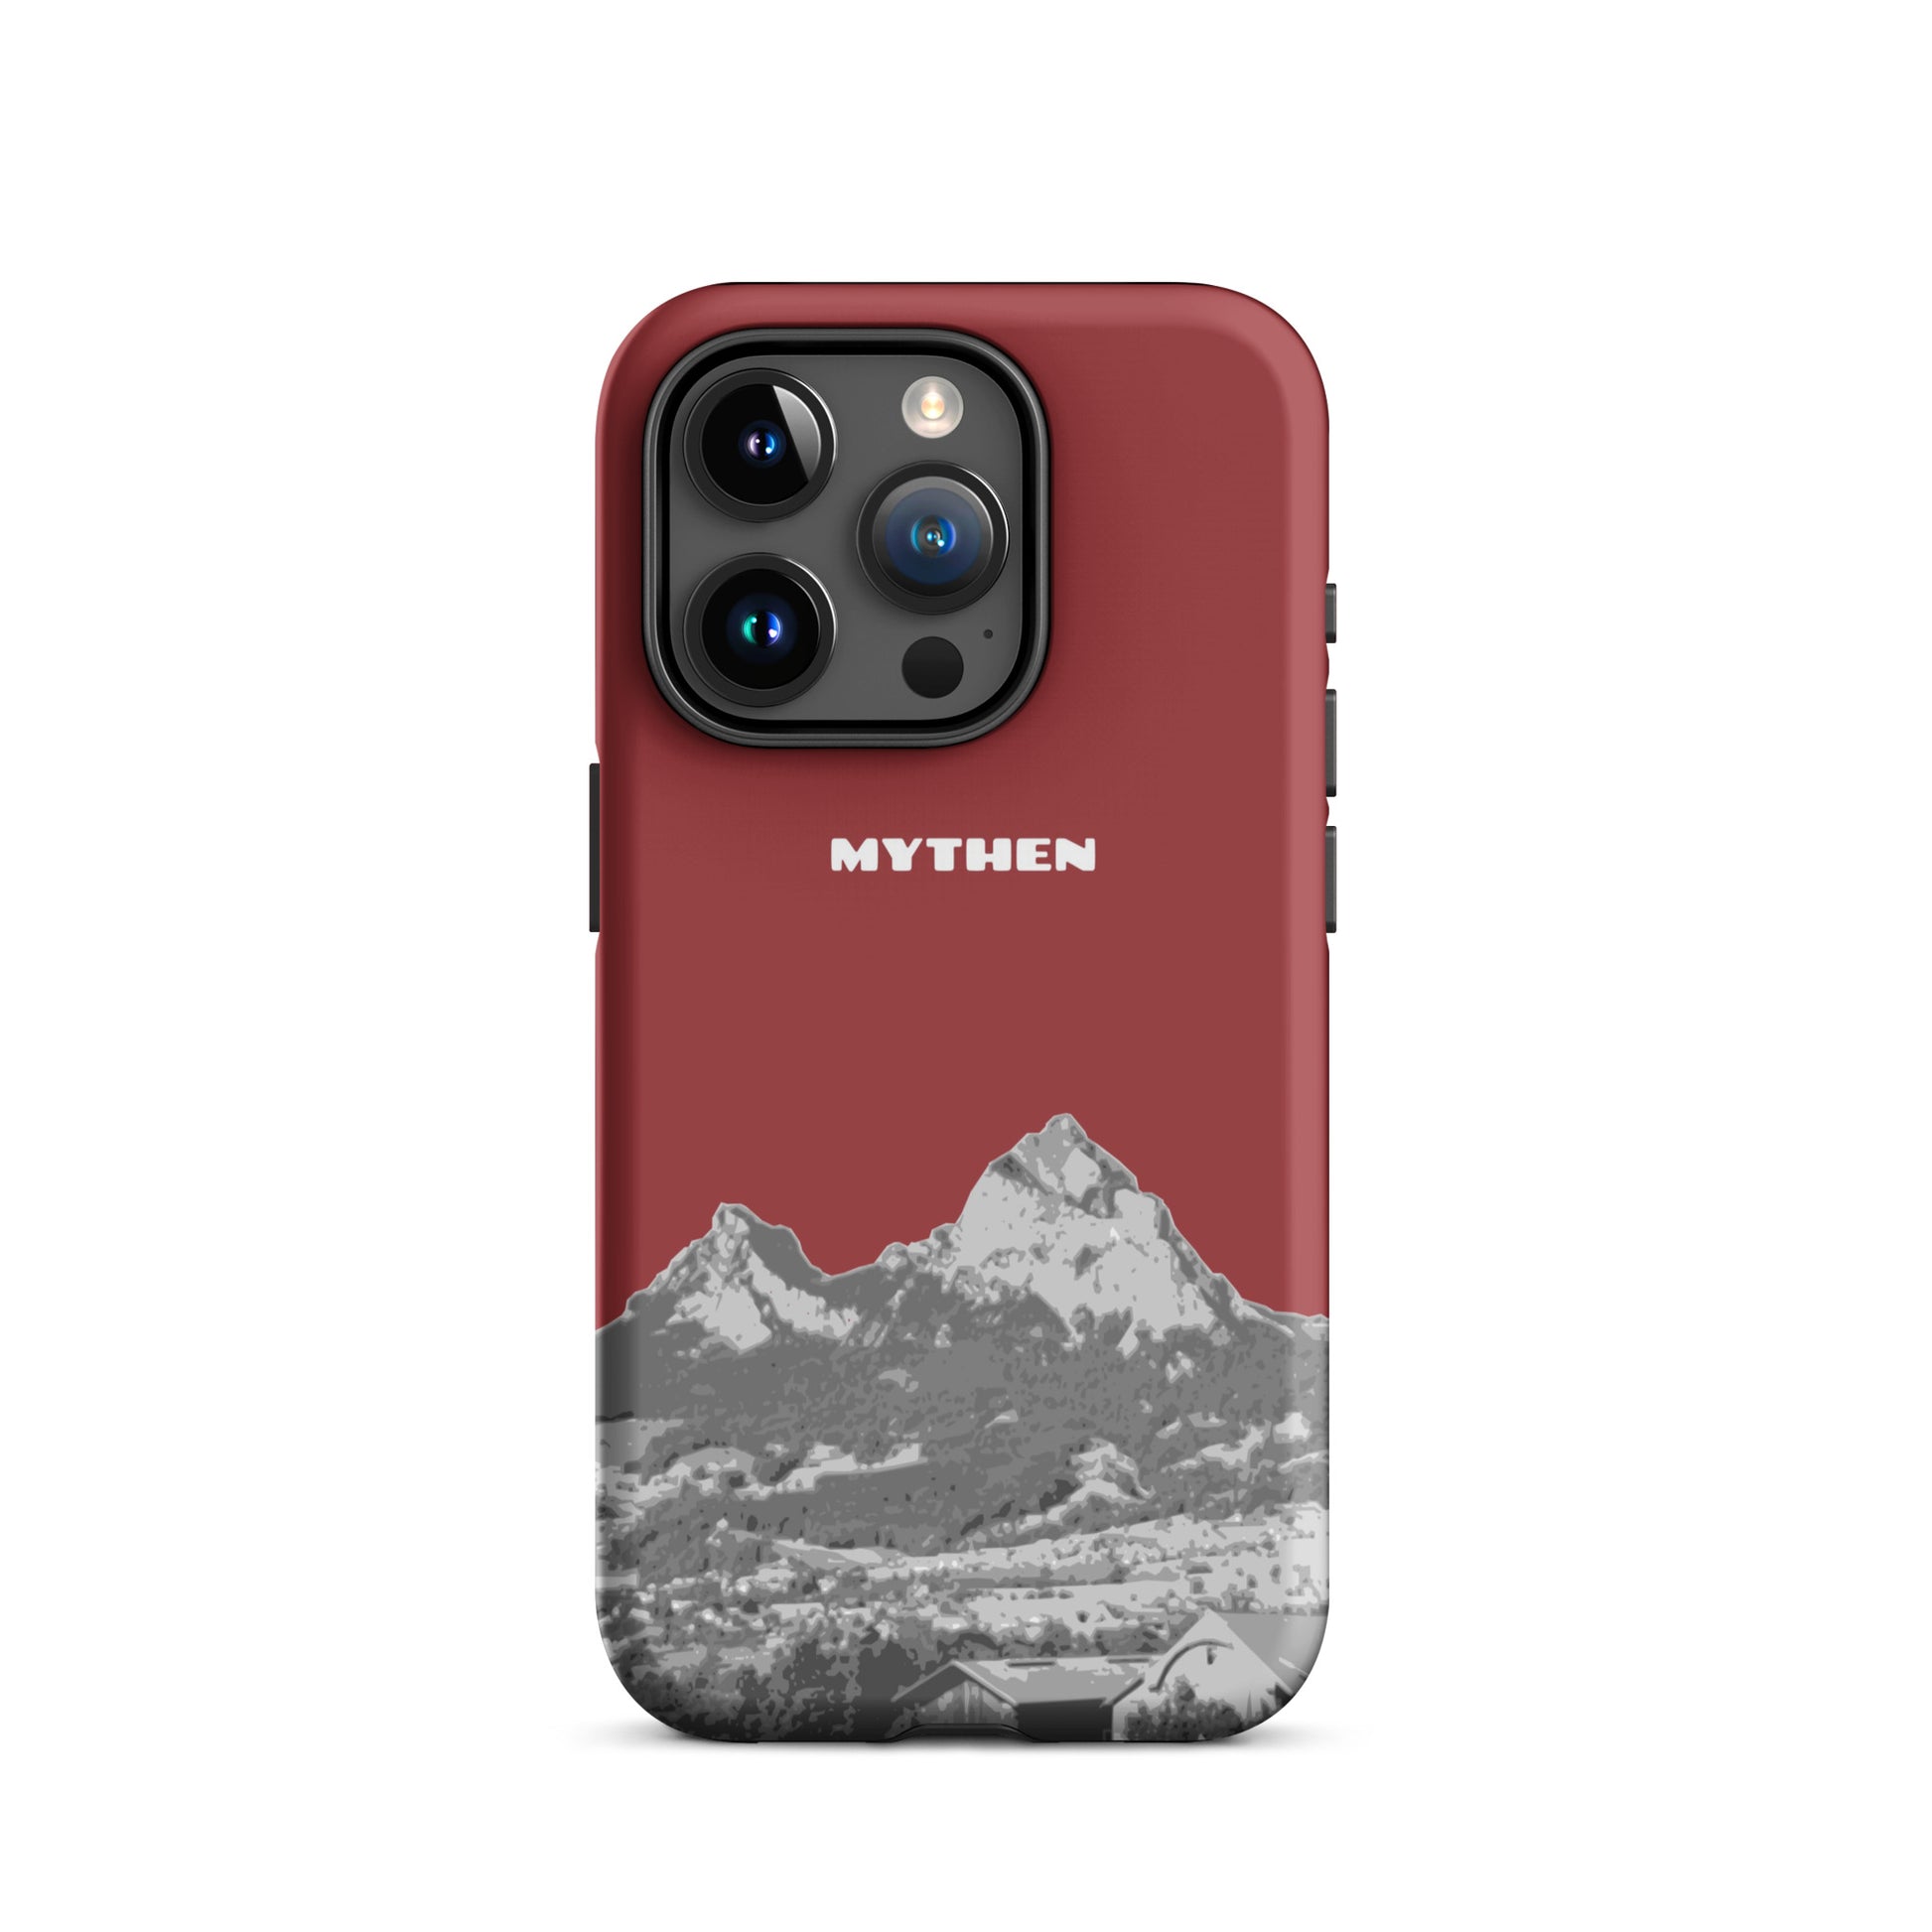 Hülle für das iPhone 15 Pro von Apple in der Farbe Rot, die den Grossen Mythen und den Kleinen Mythen bei Schwyz zeigt. 